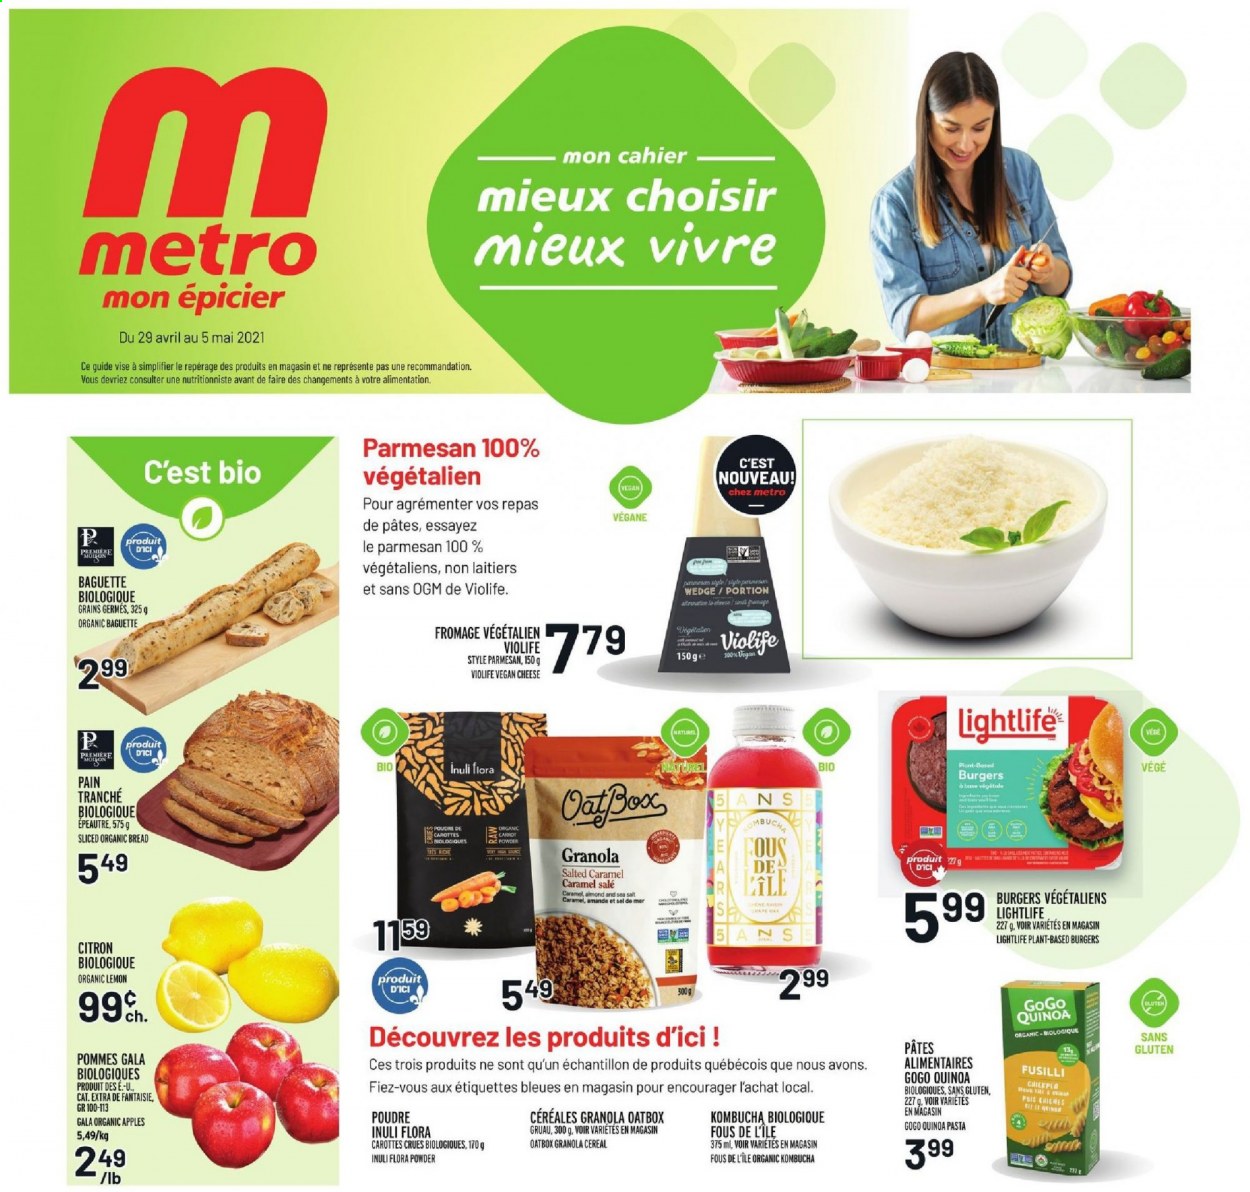 thumbnail - Metro Flyer - April 29, 2021 - May 05, 2021 - Sales products - bread, apples, Gala, hamburger, pasta, parmesan, cheese, Flora, cereals, kombucha, PREMIERE, granola, quinoa. Page 1.